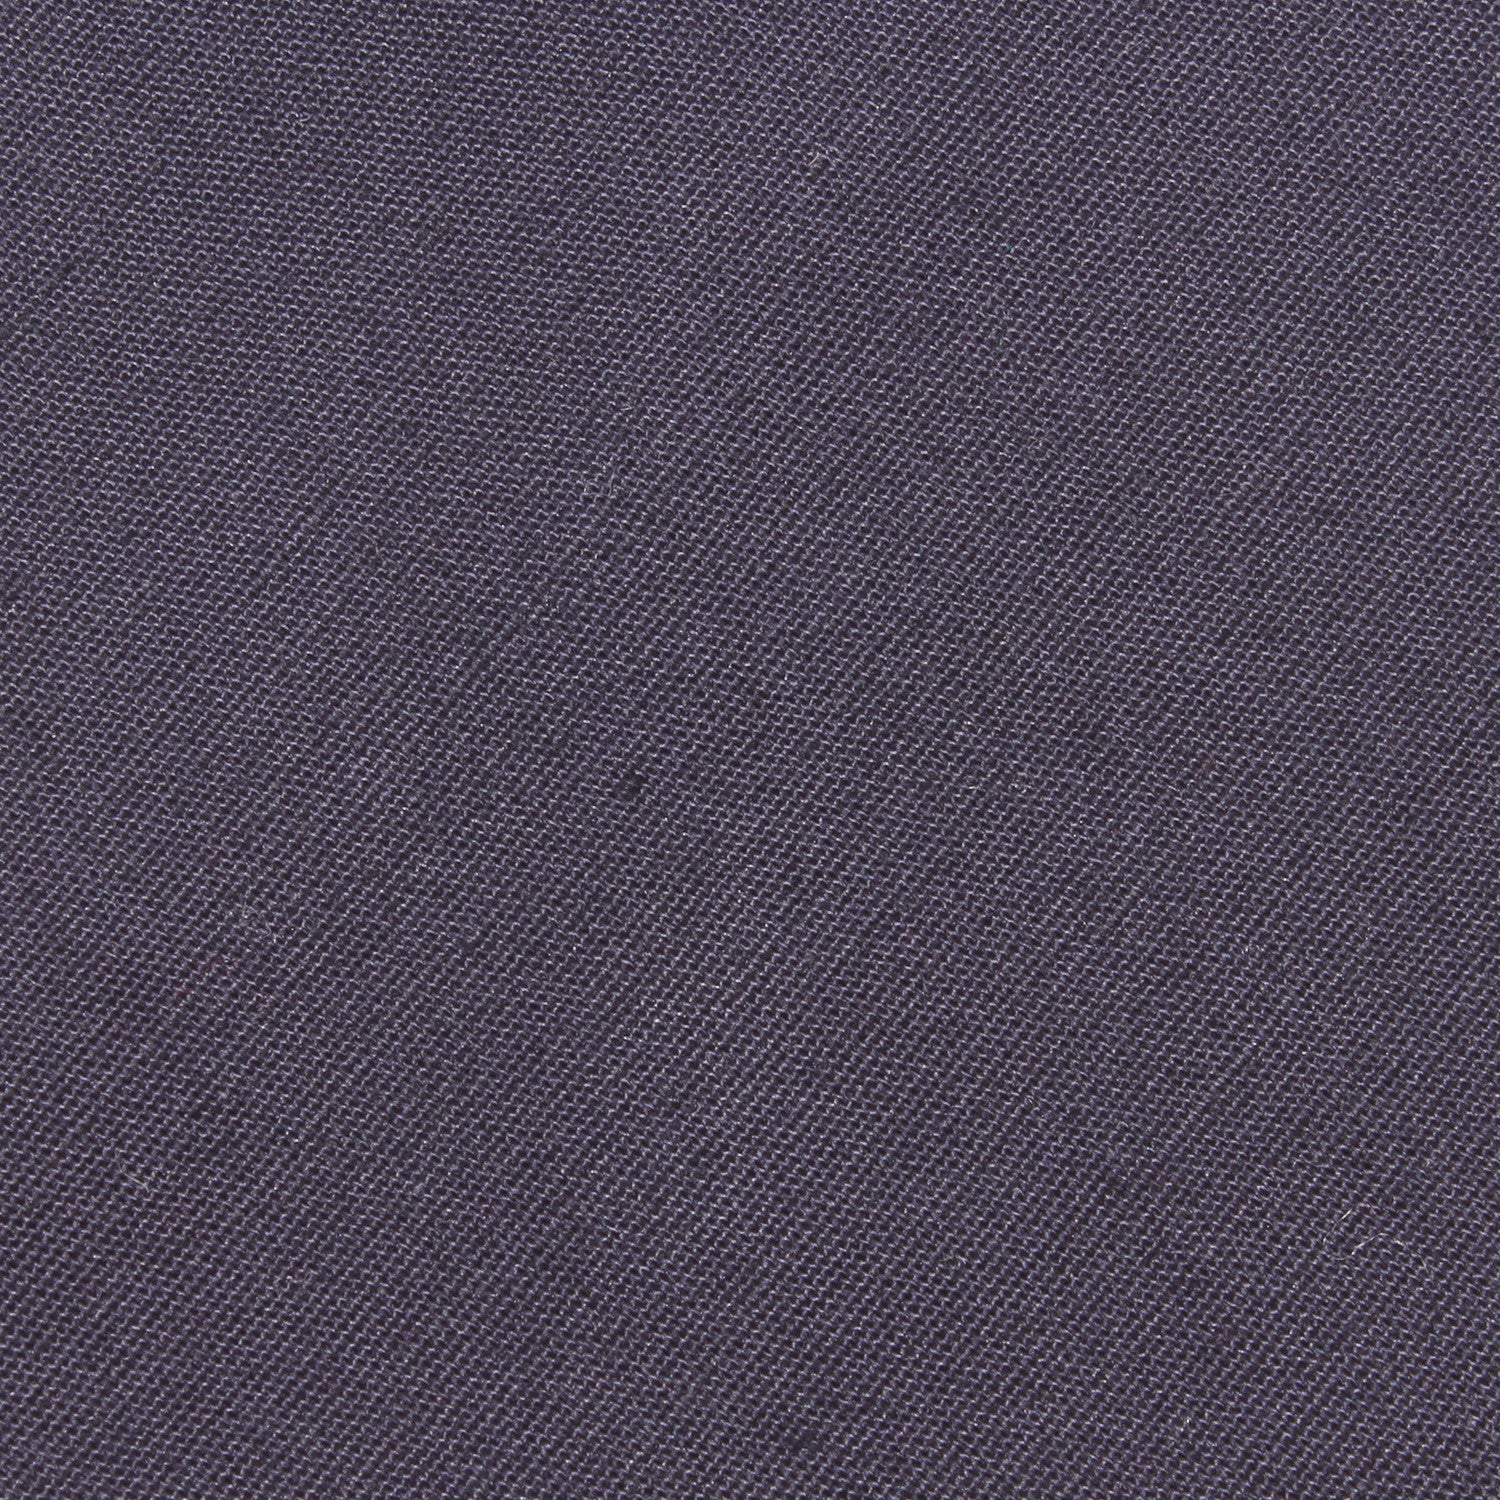 Navy Blue Cotton Fabric Necktie C016